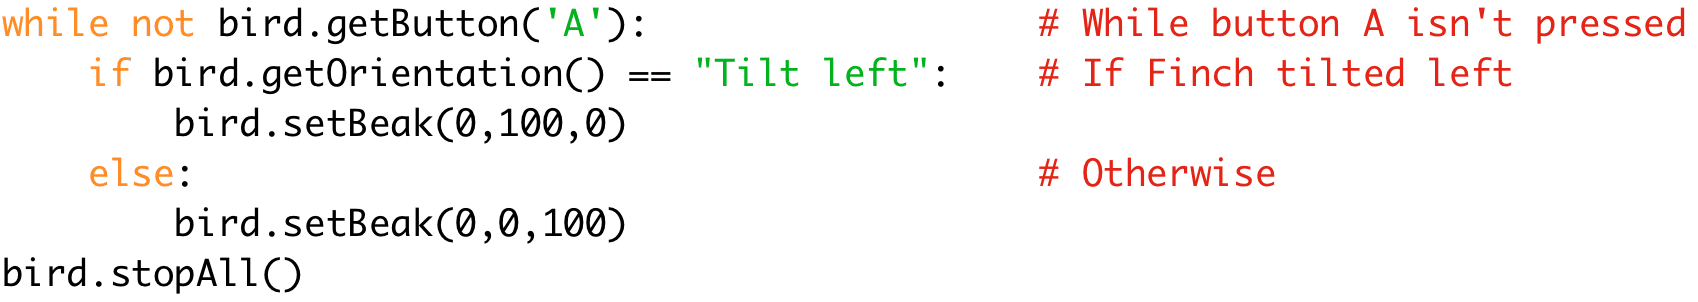 while not bird.getButton('A'): # While button A isn't pressed 
if bird.getOrientation() == "Tilt left": # If Finch tilted left 
bird.setBeak(0,100,0) 
else: # Otherwise 
bird.setBeak(0,0,100) 
bird.stopAll()